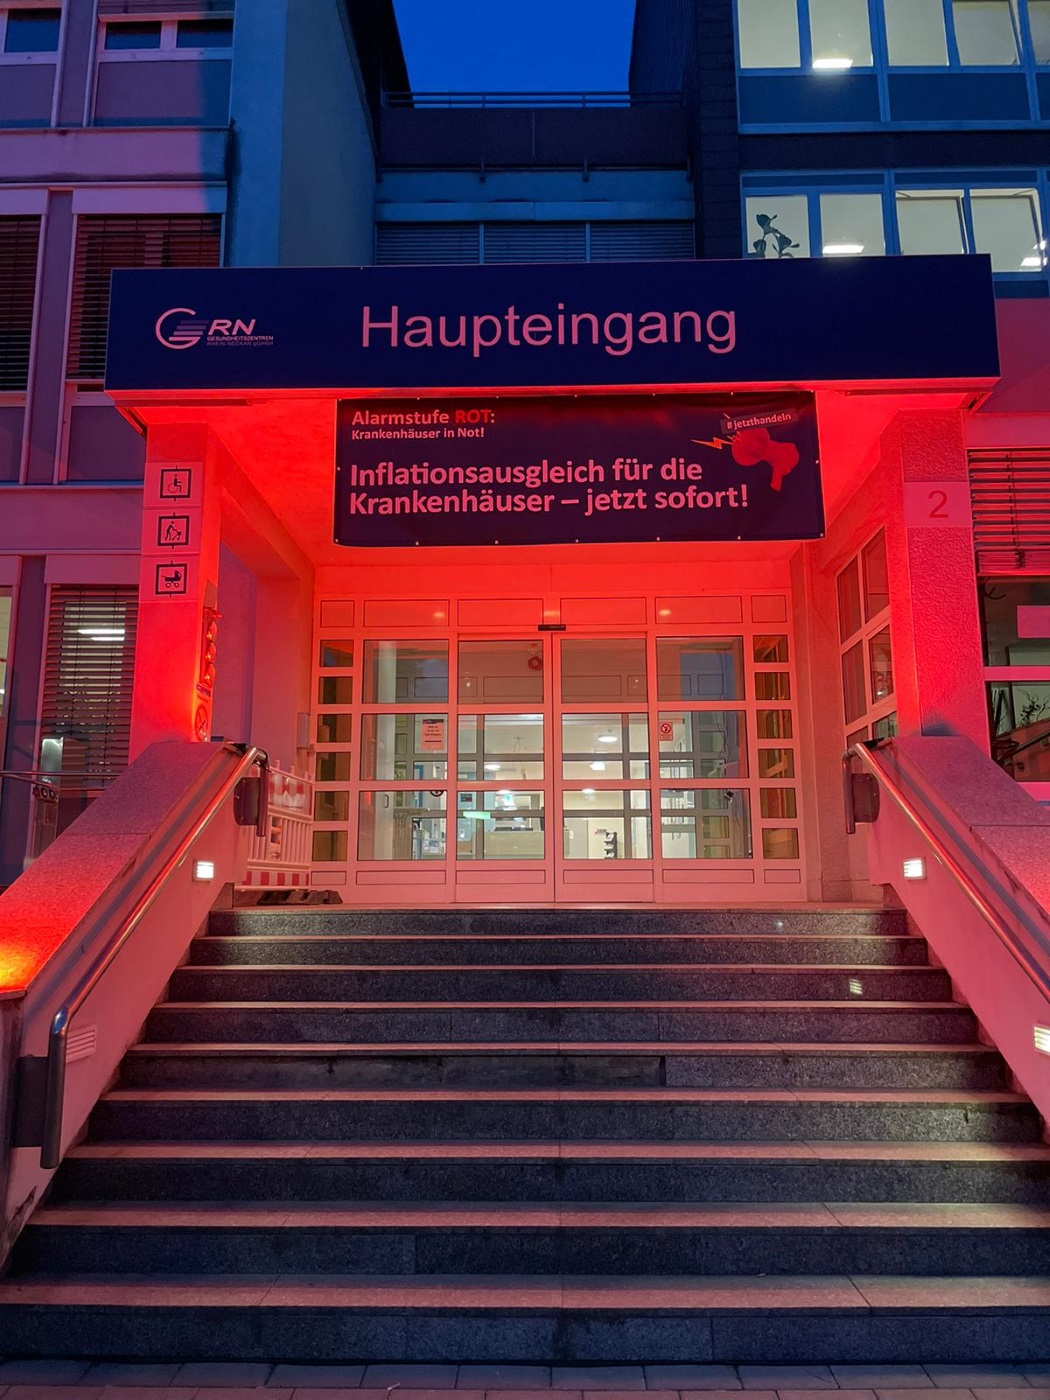 DKG-Aktion "Alarmstufe Rot - Krankenhäuser in Not" in den GRN-Kliniken, GRN-Klinik Eberbach